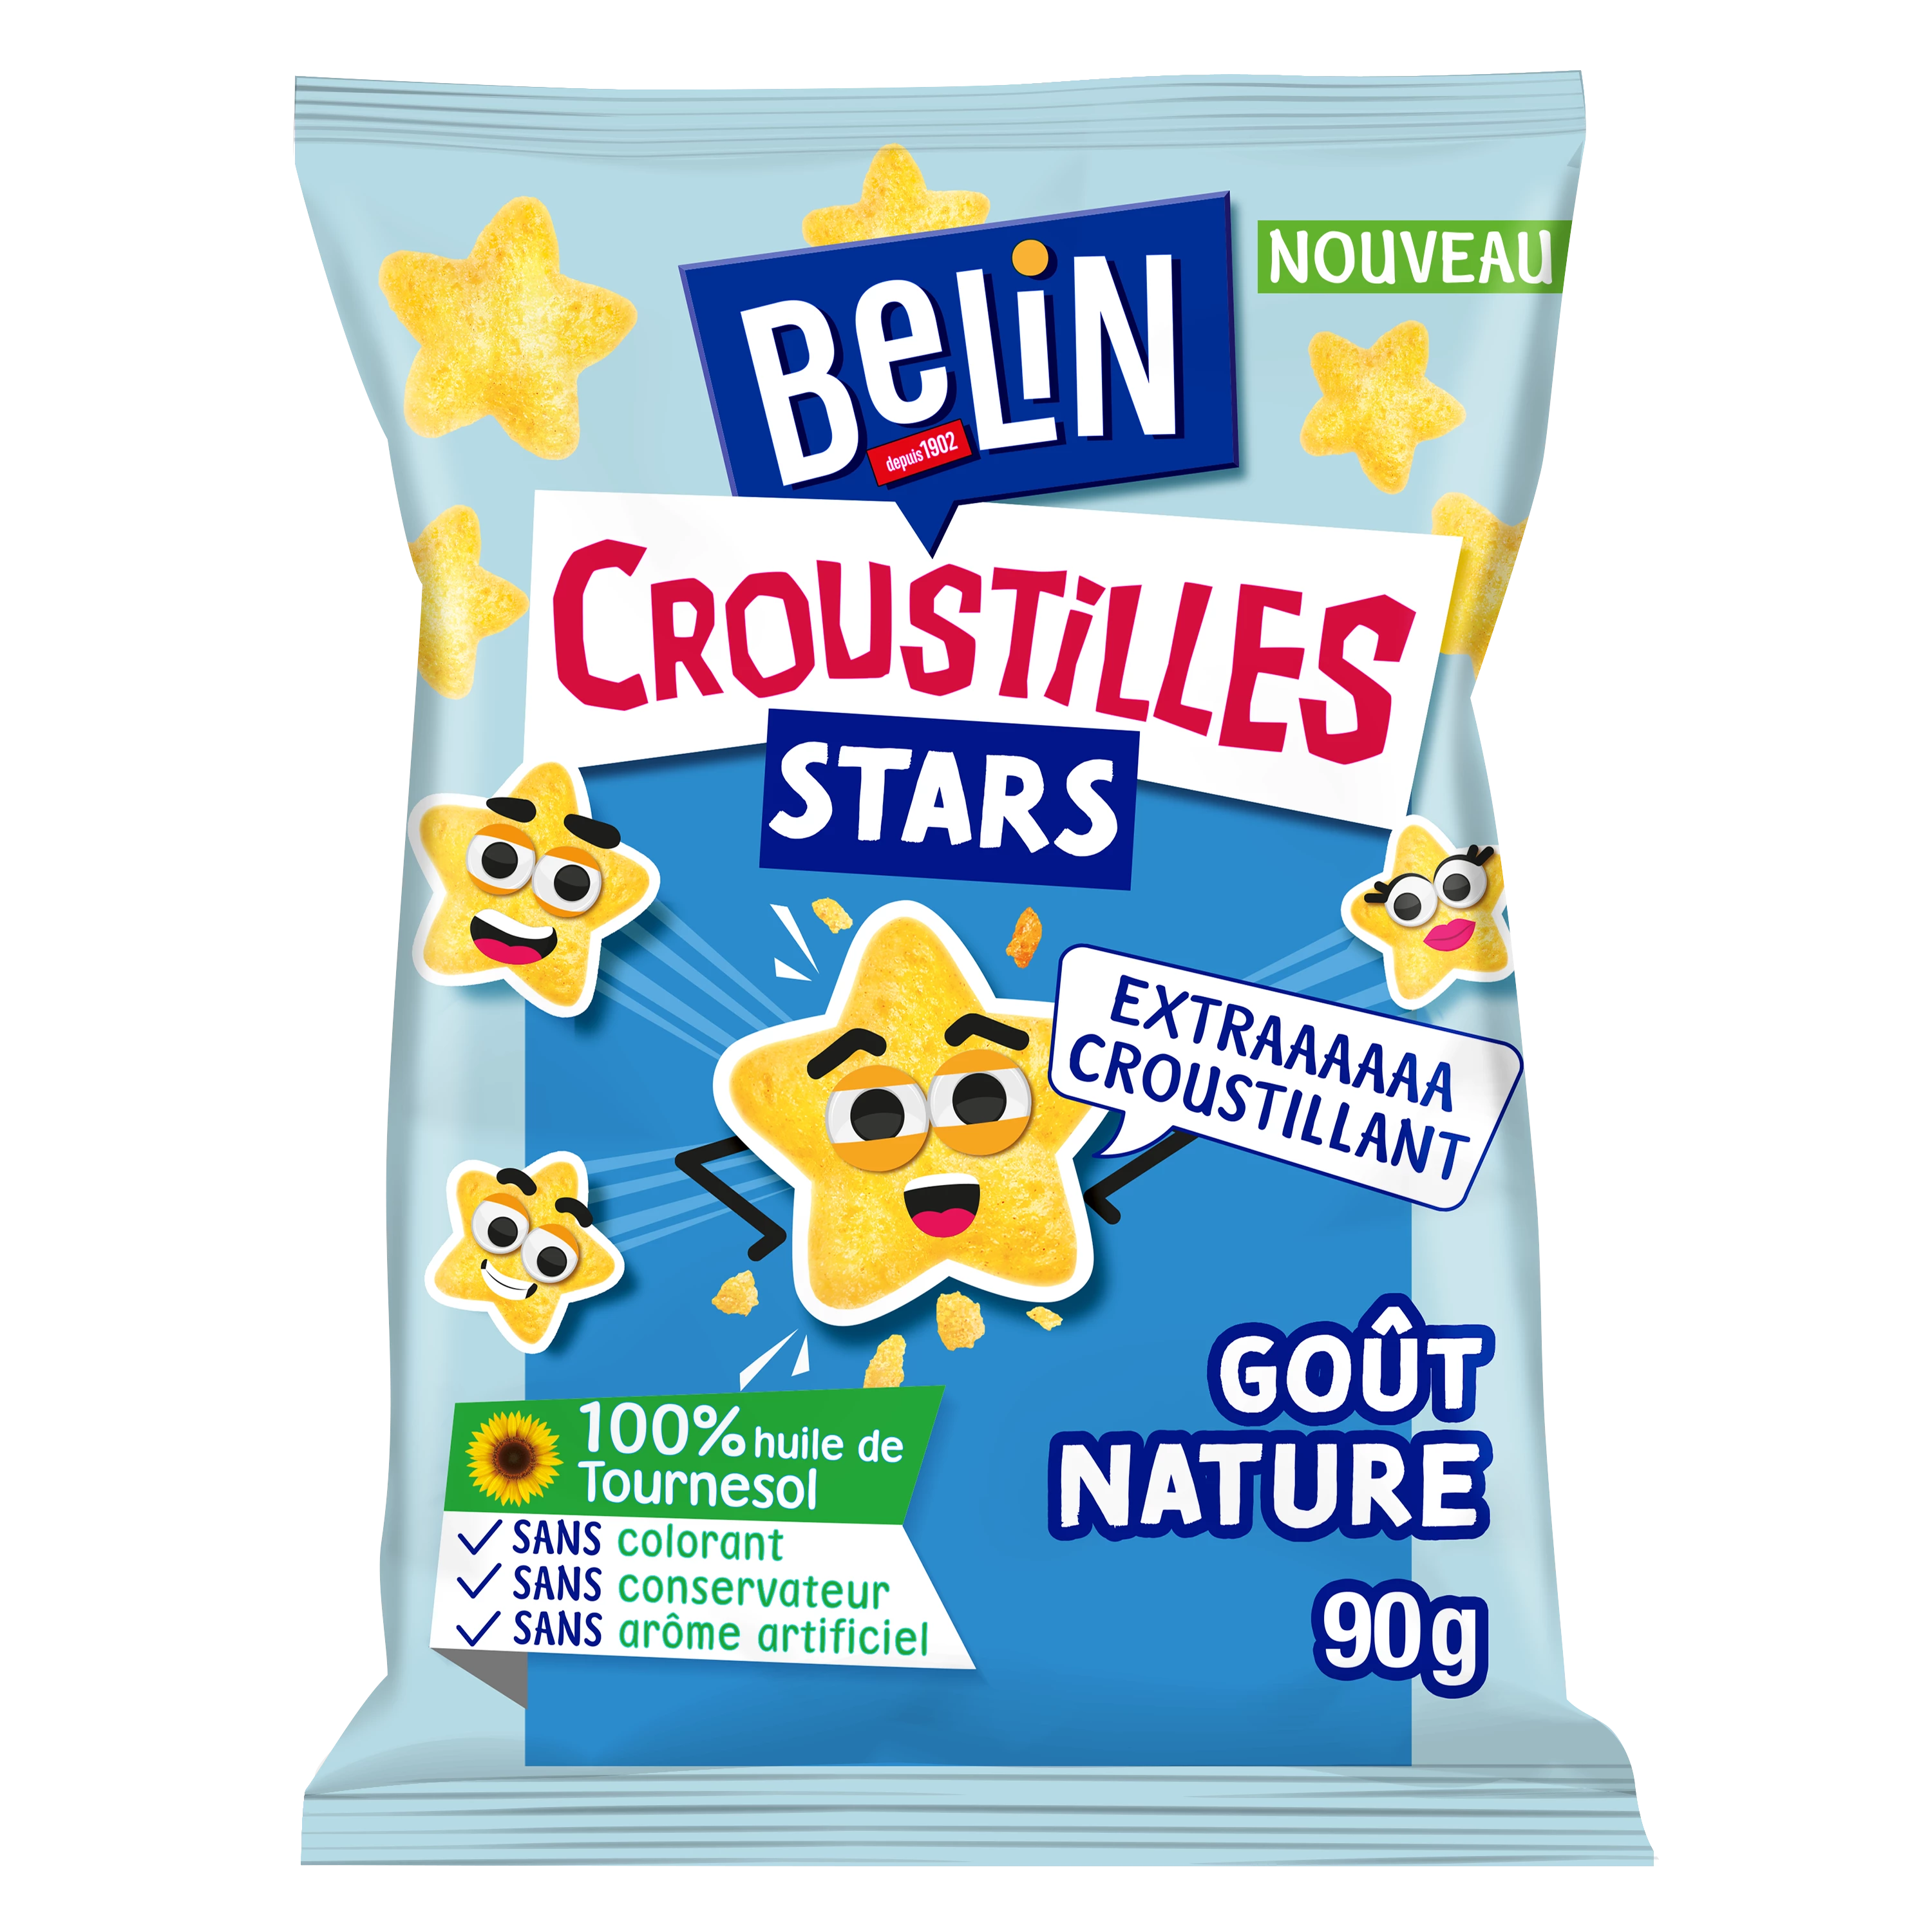 Печенье Аперитив натуральный вкус Croustil les Stars, 90г - BELIN